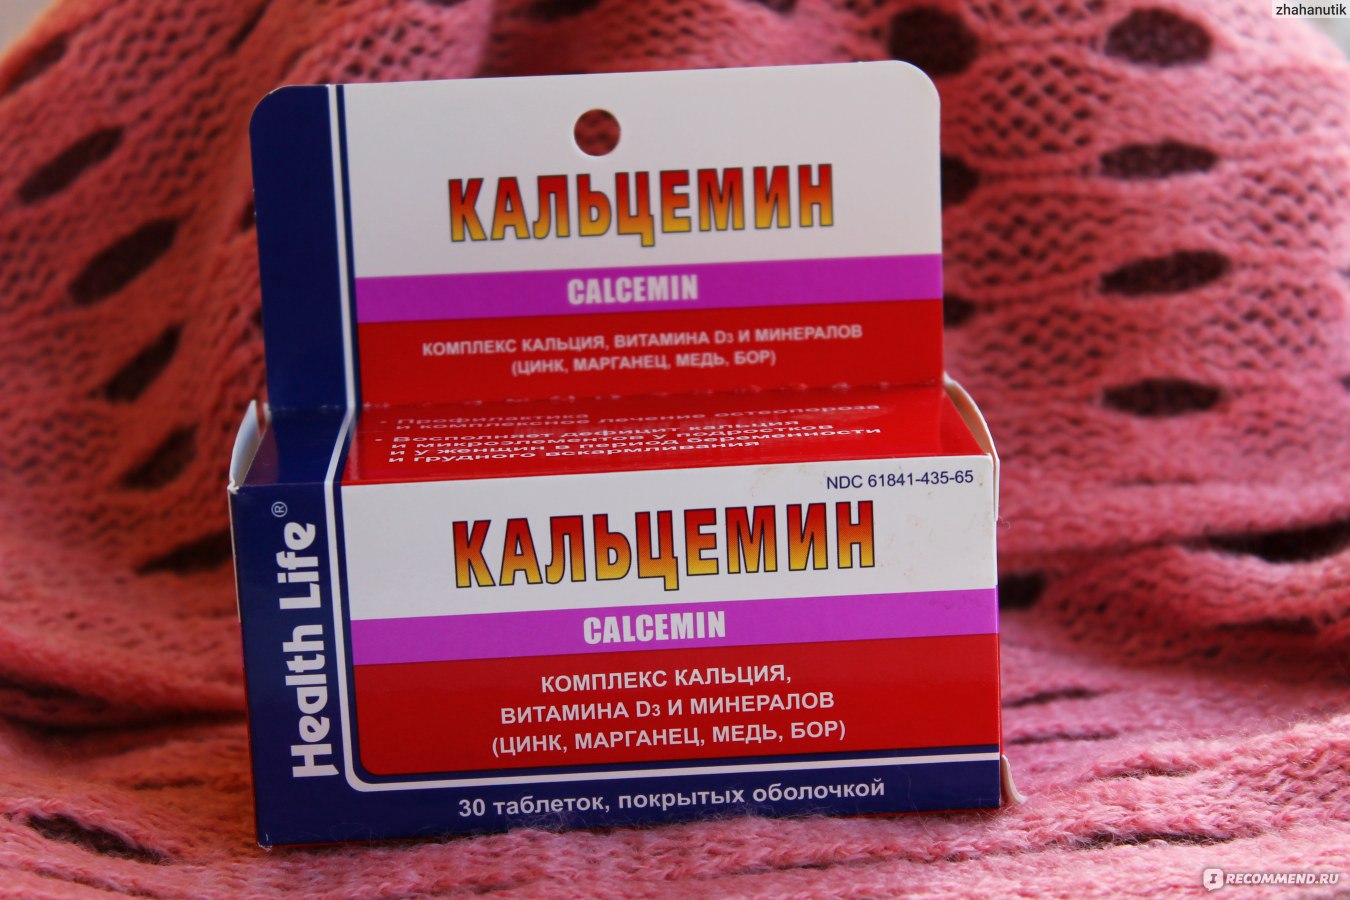 Кальцемин отзывы врачей. Кальцемин адванс форте. Кальцемин 500. Кальцемин 250 мг. Кальцемин Sagmel.